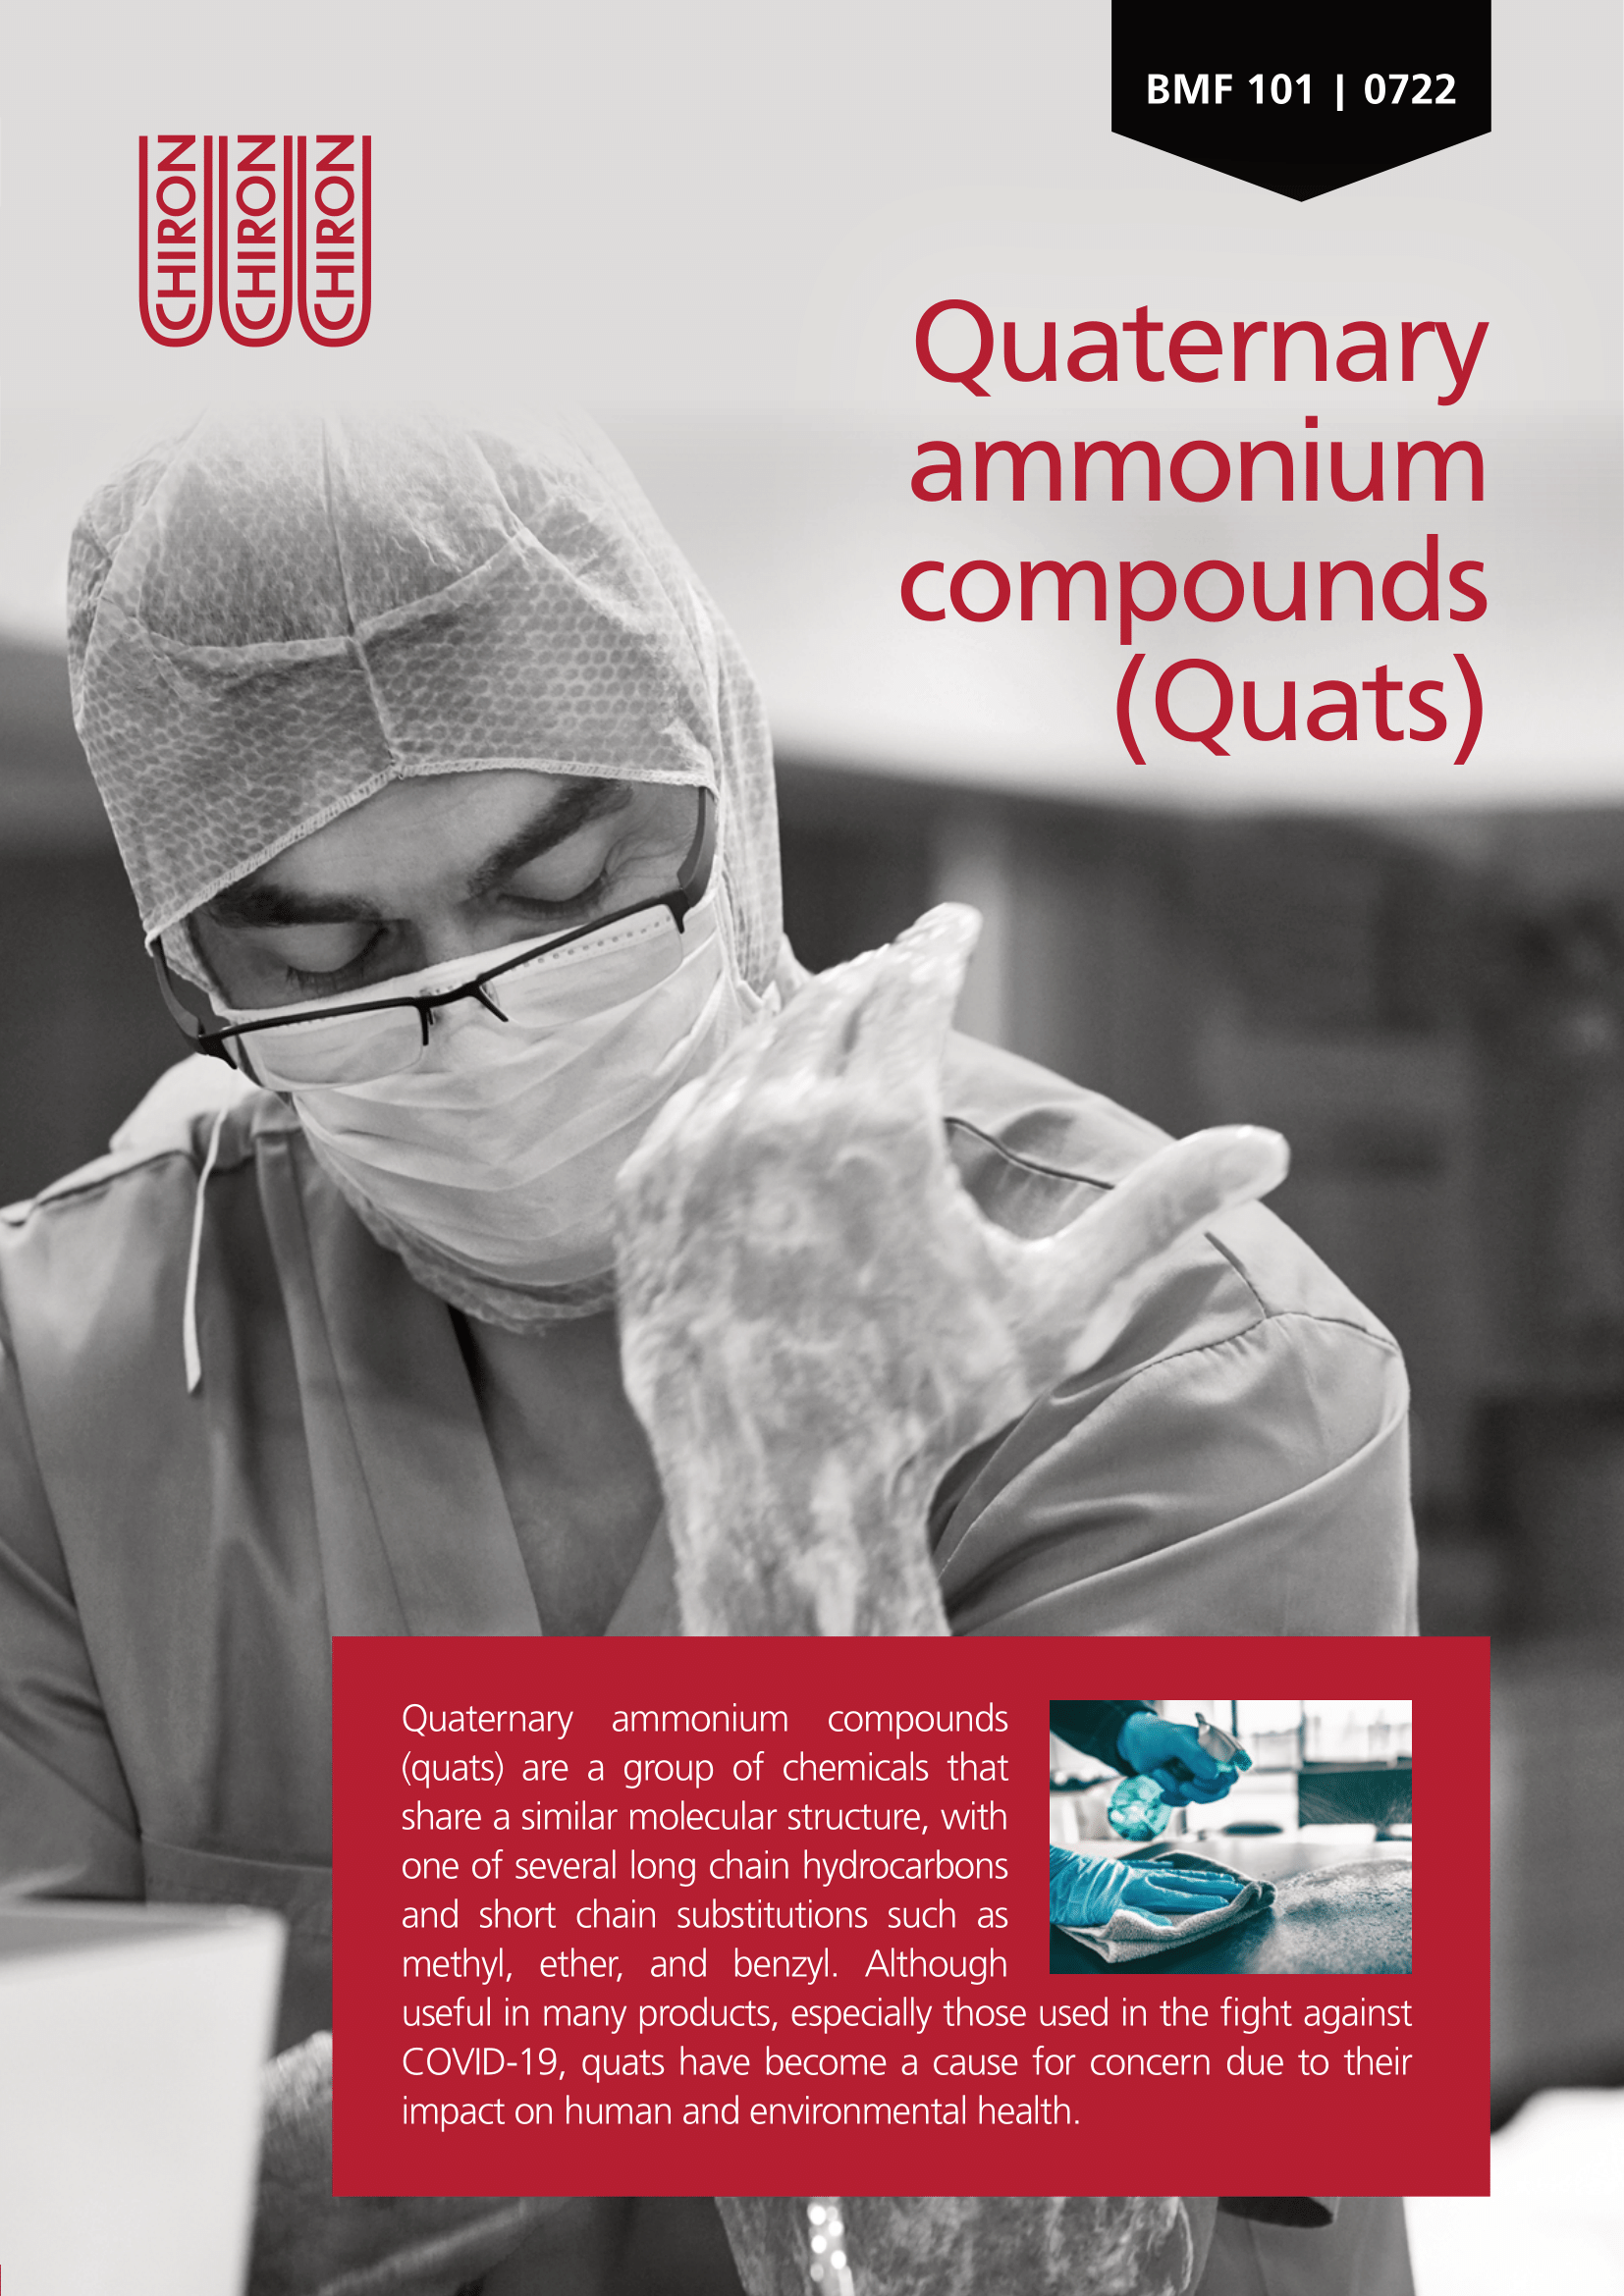 BMF 101 - Quaternary ammonium compounds (Quats)